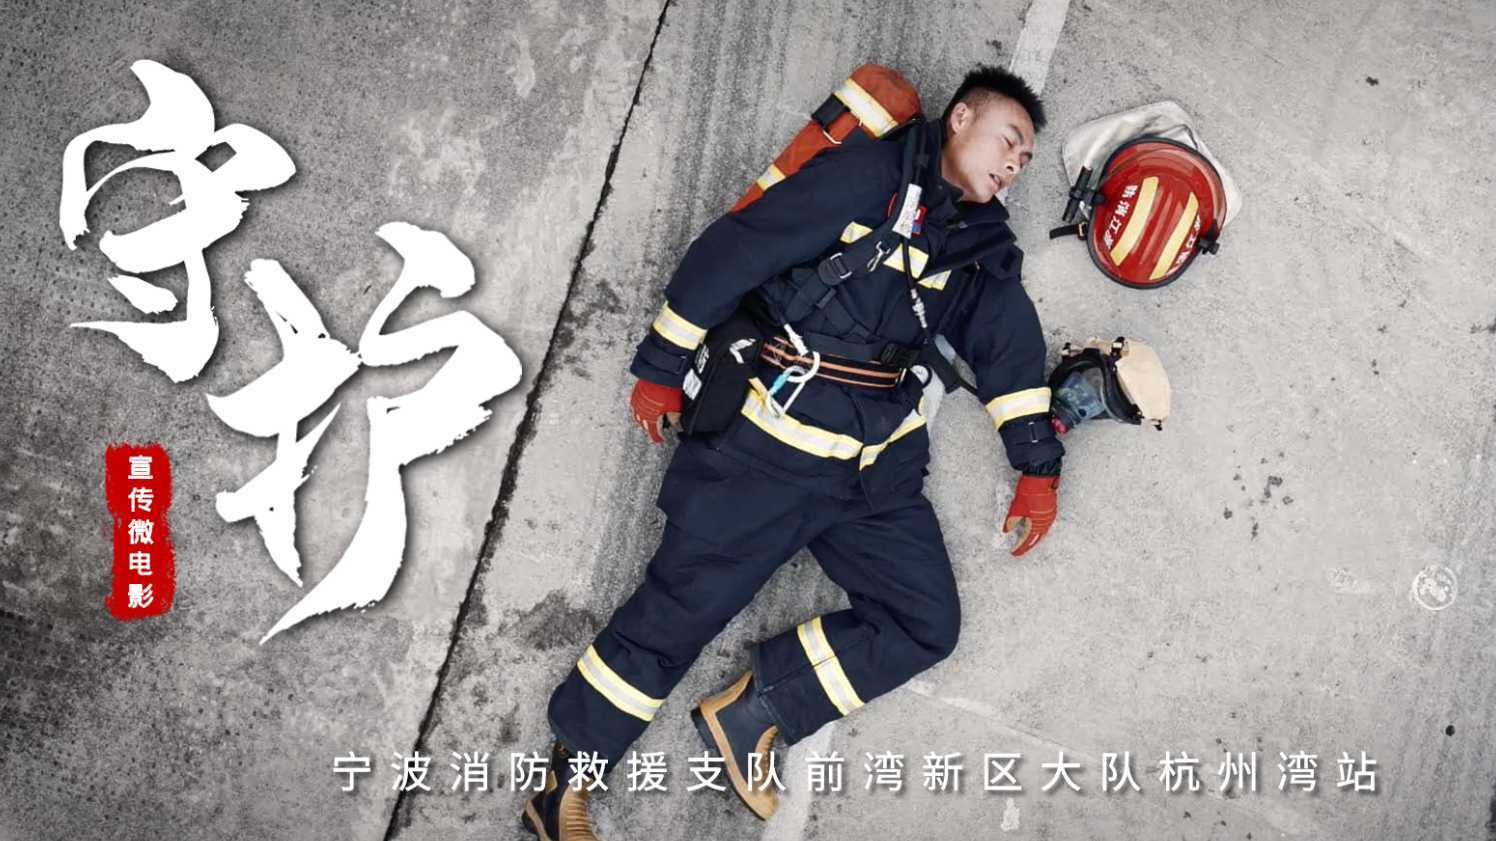 《守护》——宁波消防员形象宣传片